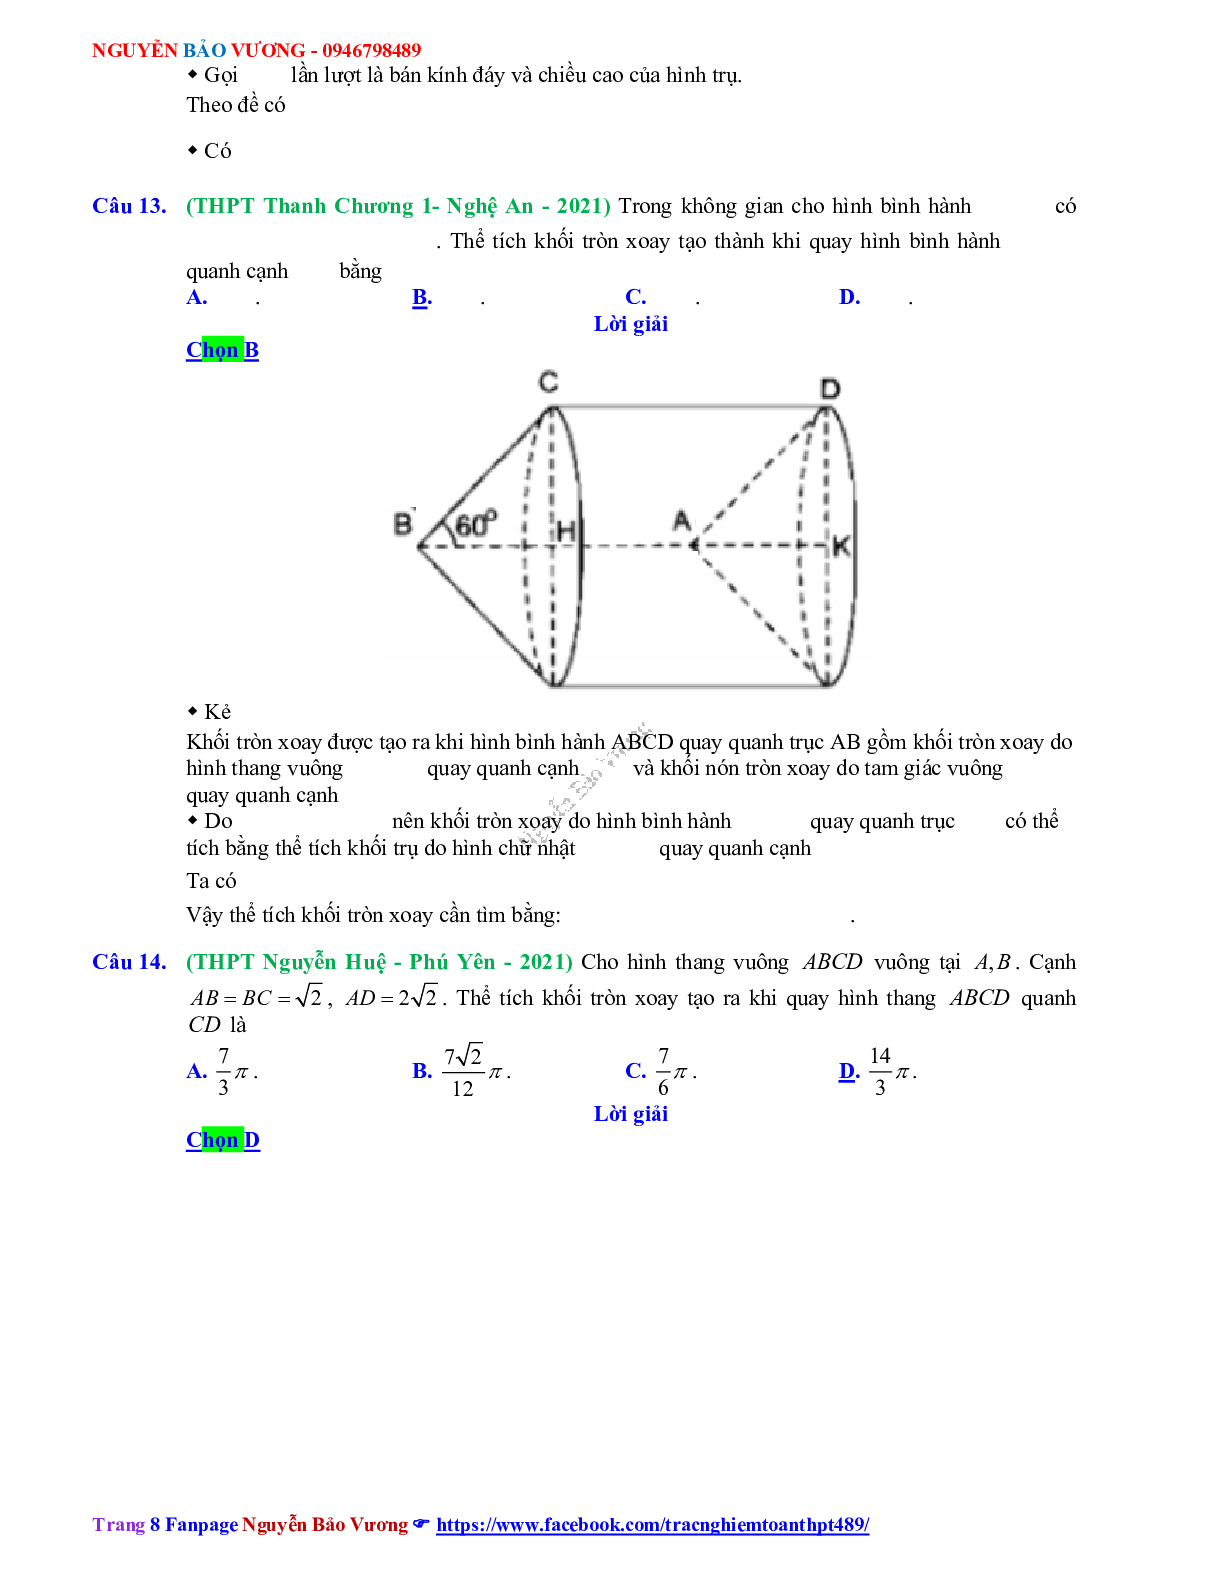 Trắc nghiệm Ôn thi THPT QG Toán 12: Đáp án khối tròn xoay mức độ vận dụng (trang 8)